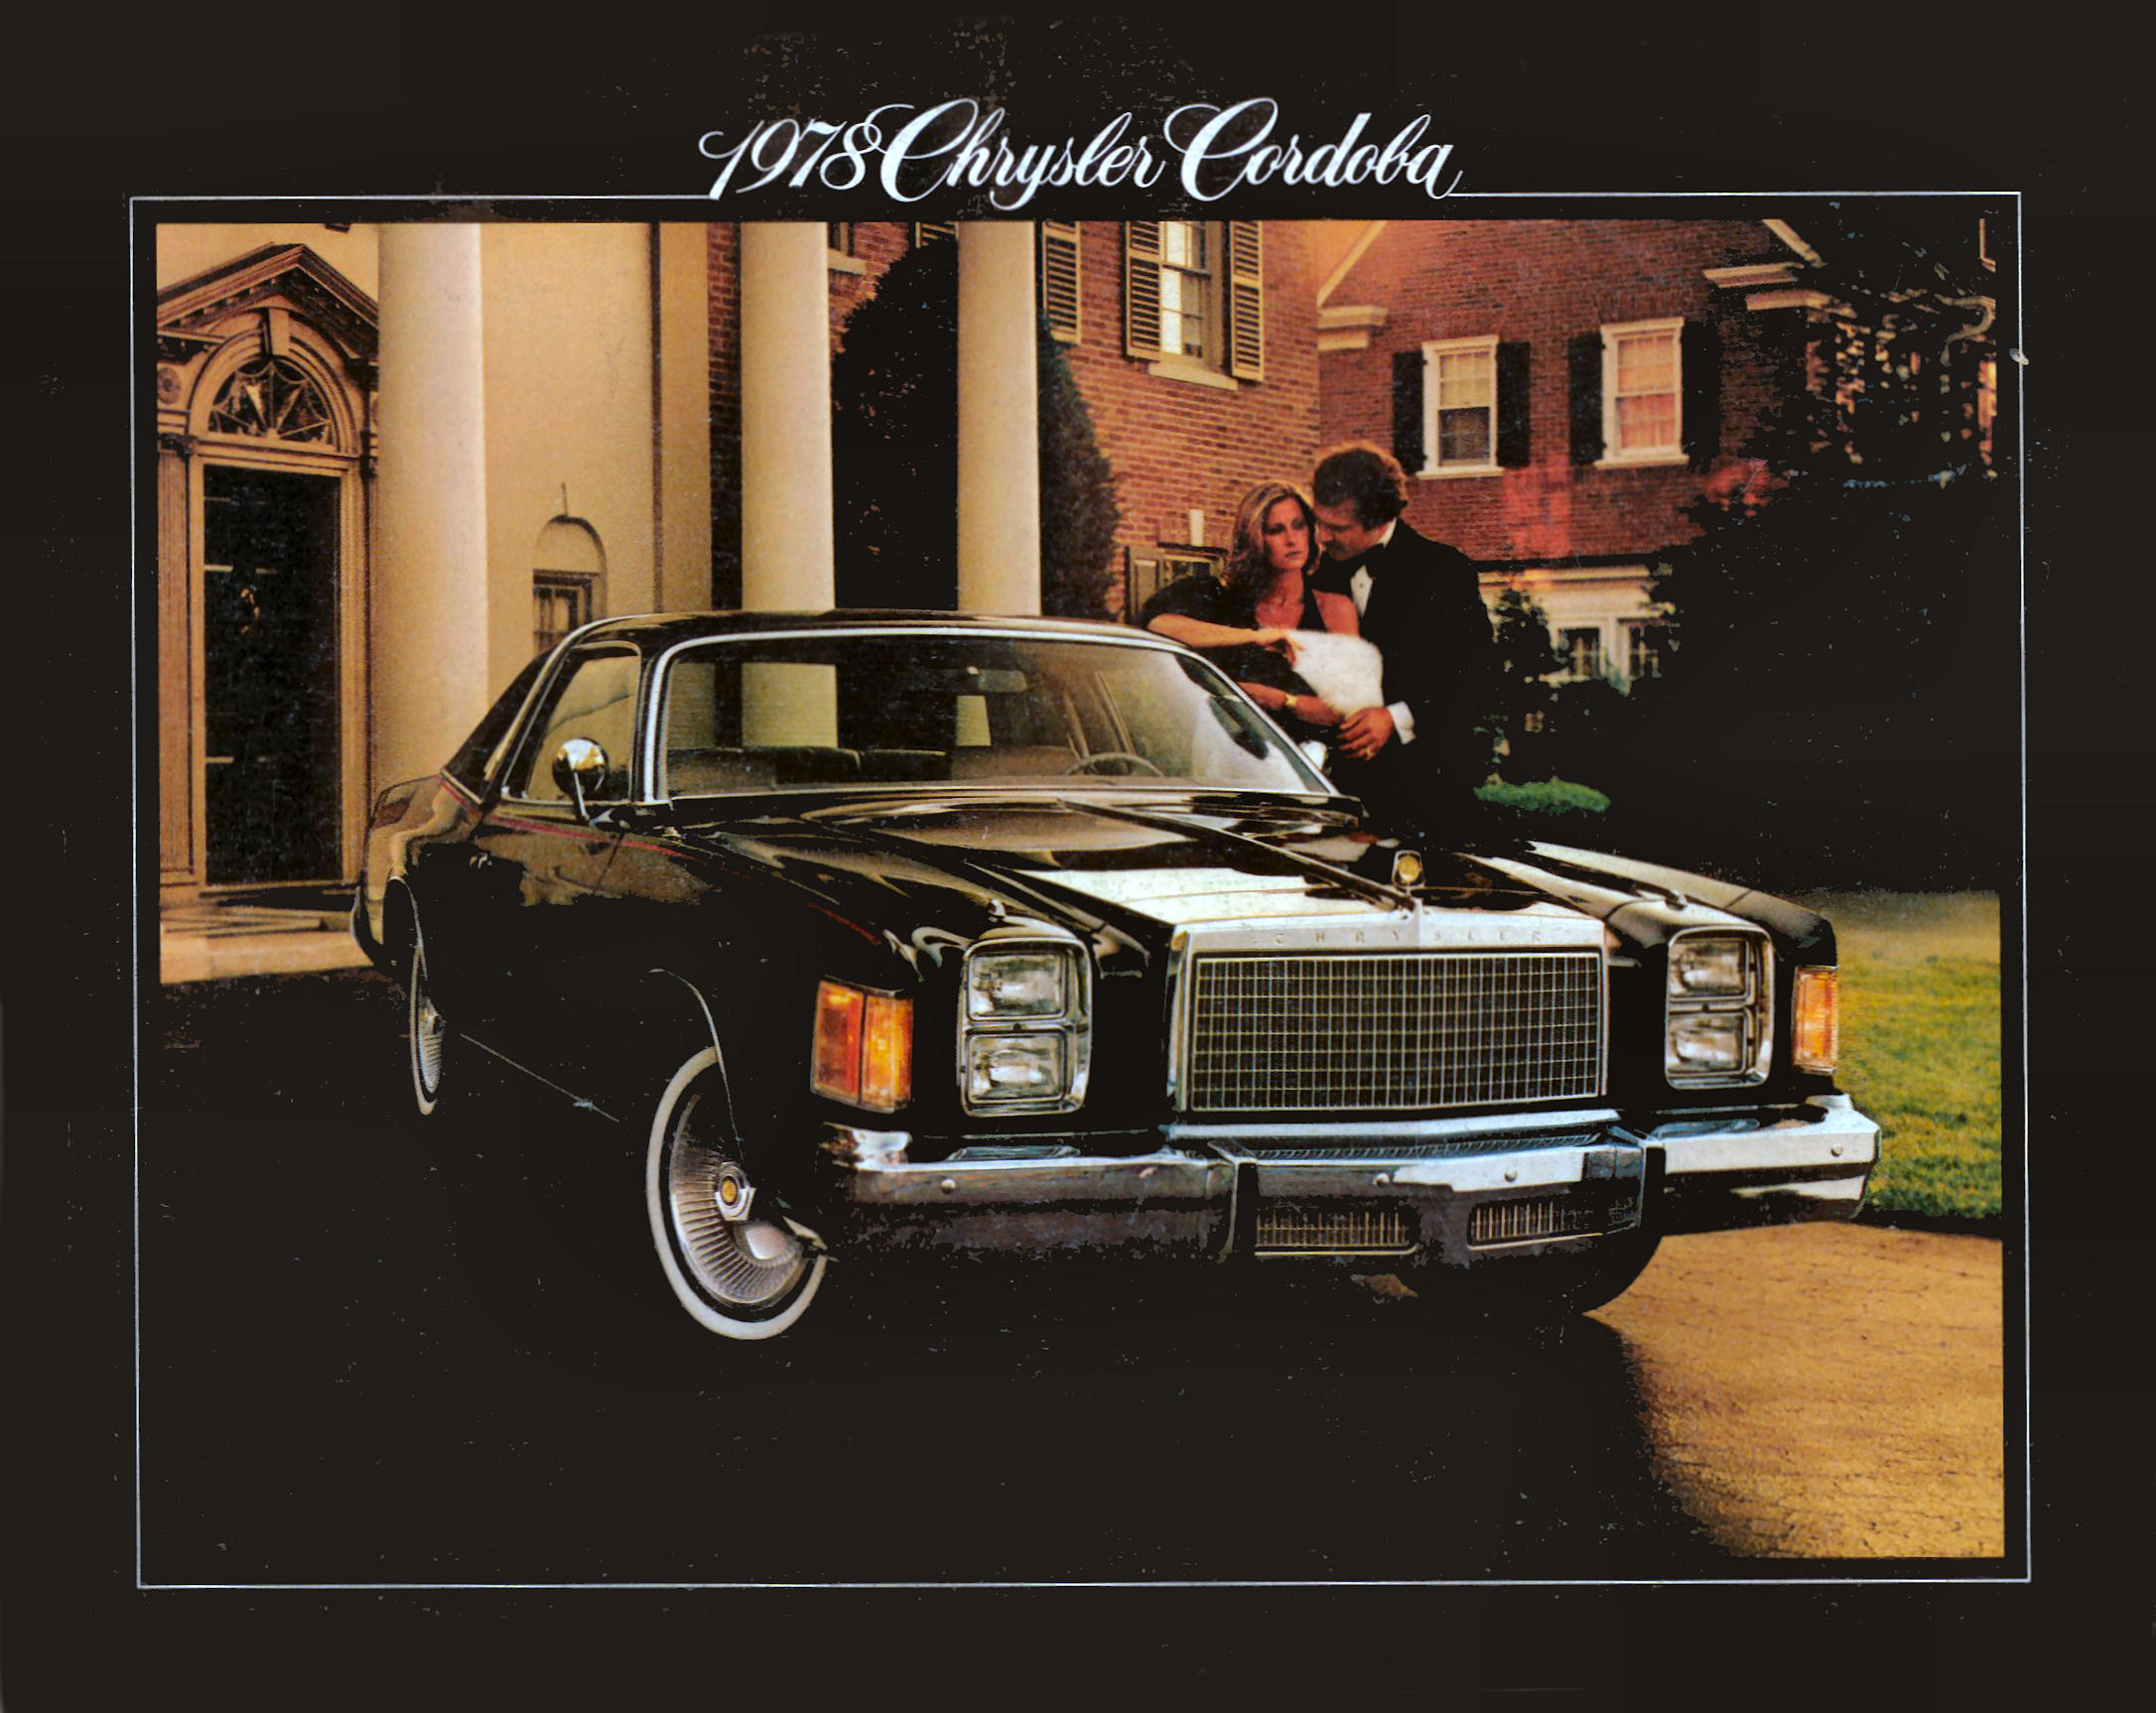 1978 Chrysler Cordoba Brochure Page 1